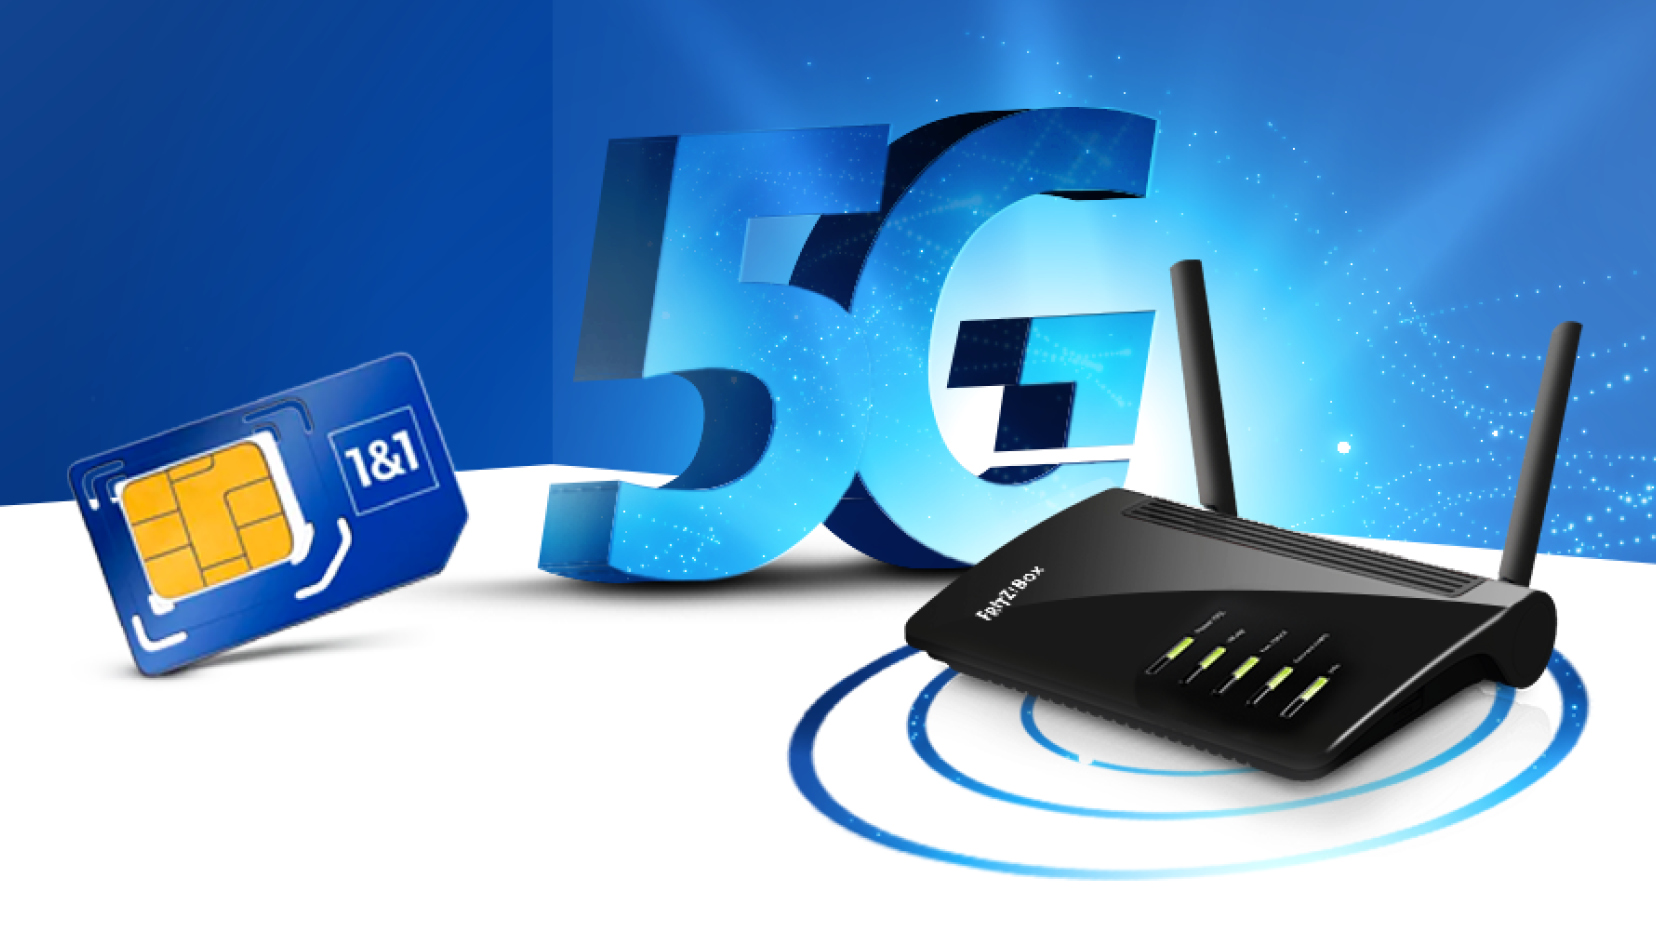 1&1 5G zu Hause: Gerichtsurteil bestätig Vermarktung auf dem 1&1 Mobilfunknetz 5G zu Hause